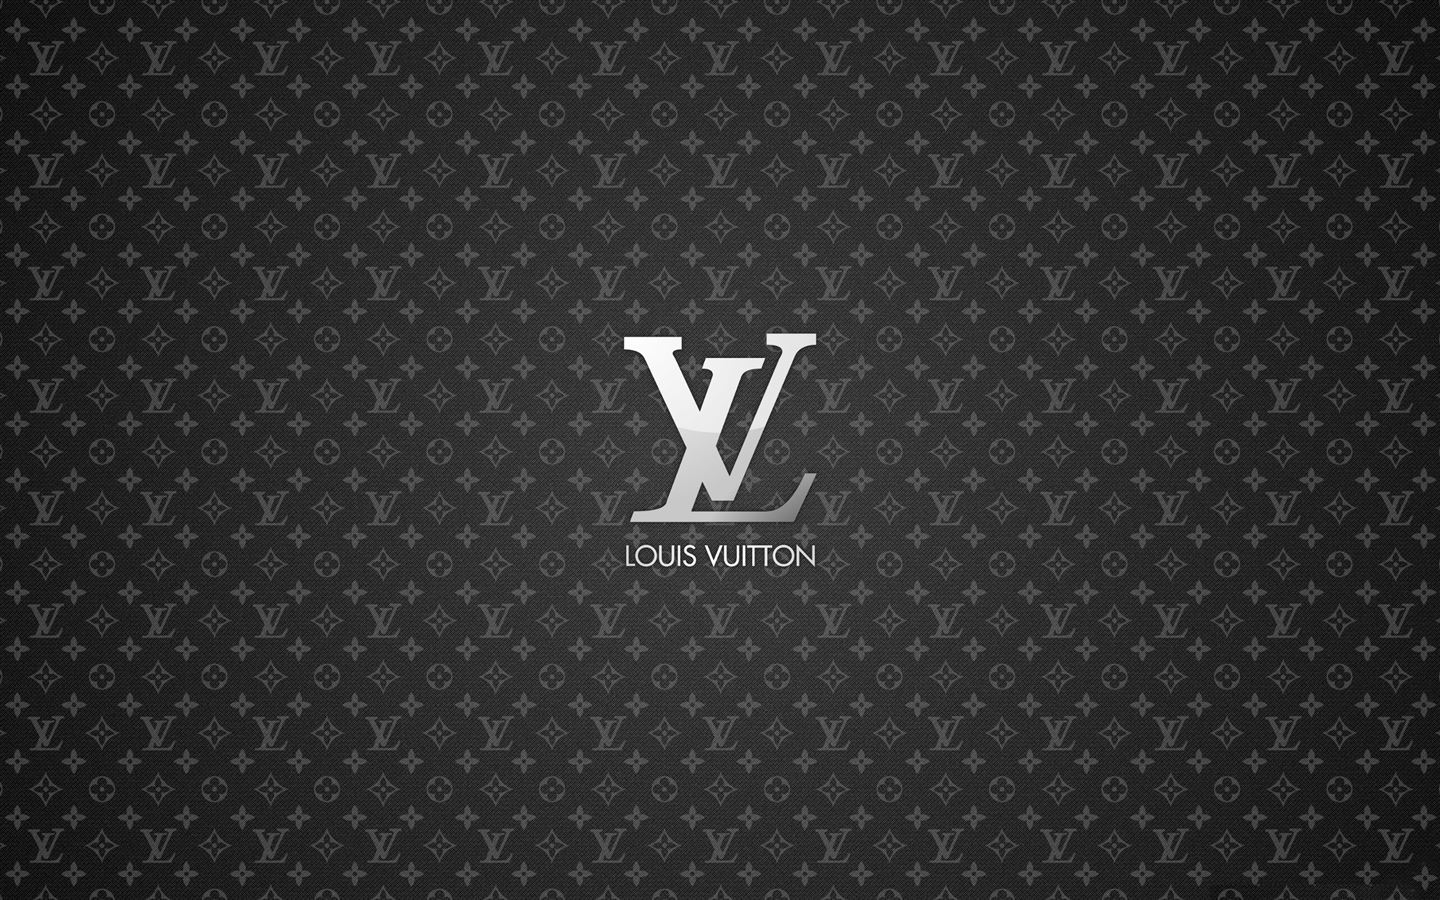 Louis Vuitton Macbook Pro Cover